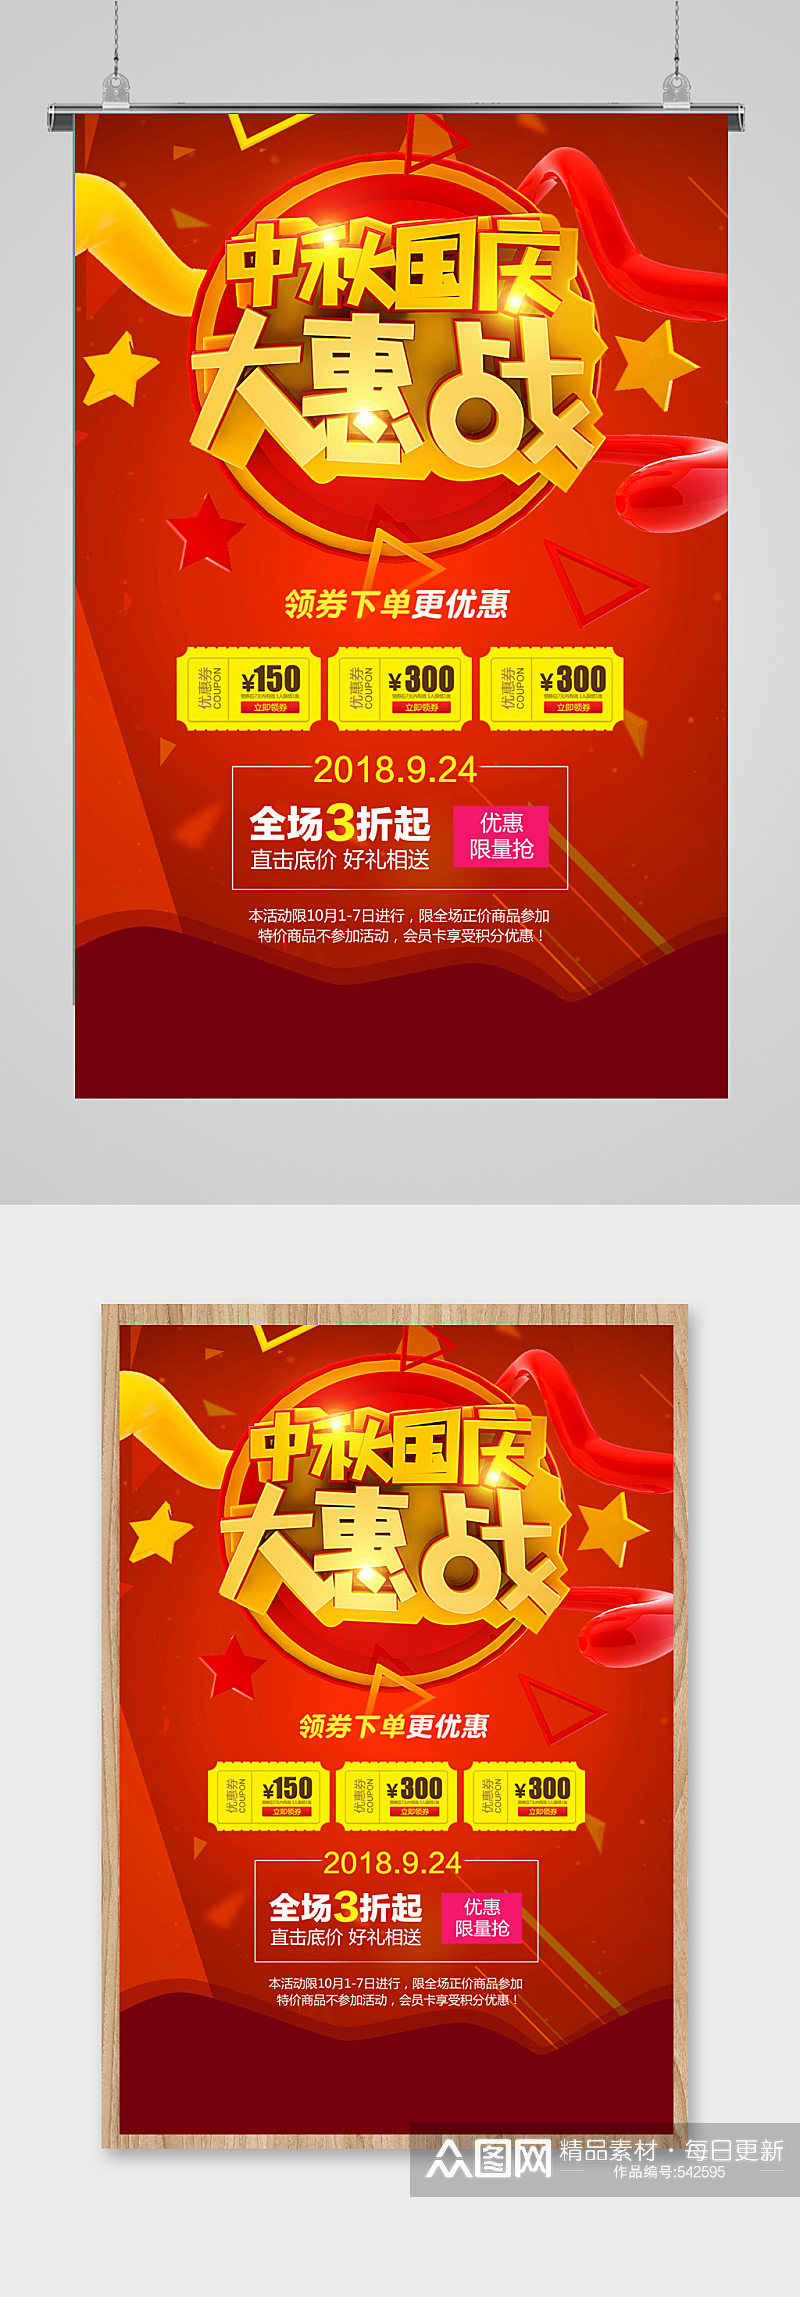 国庆节电商淘宝促销海报宣传单页欢乐购素材